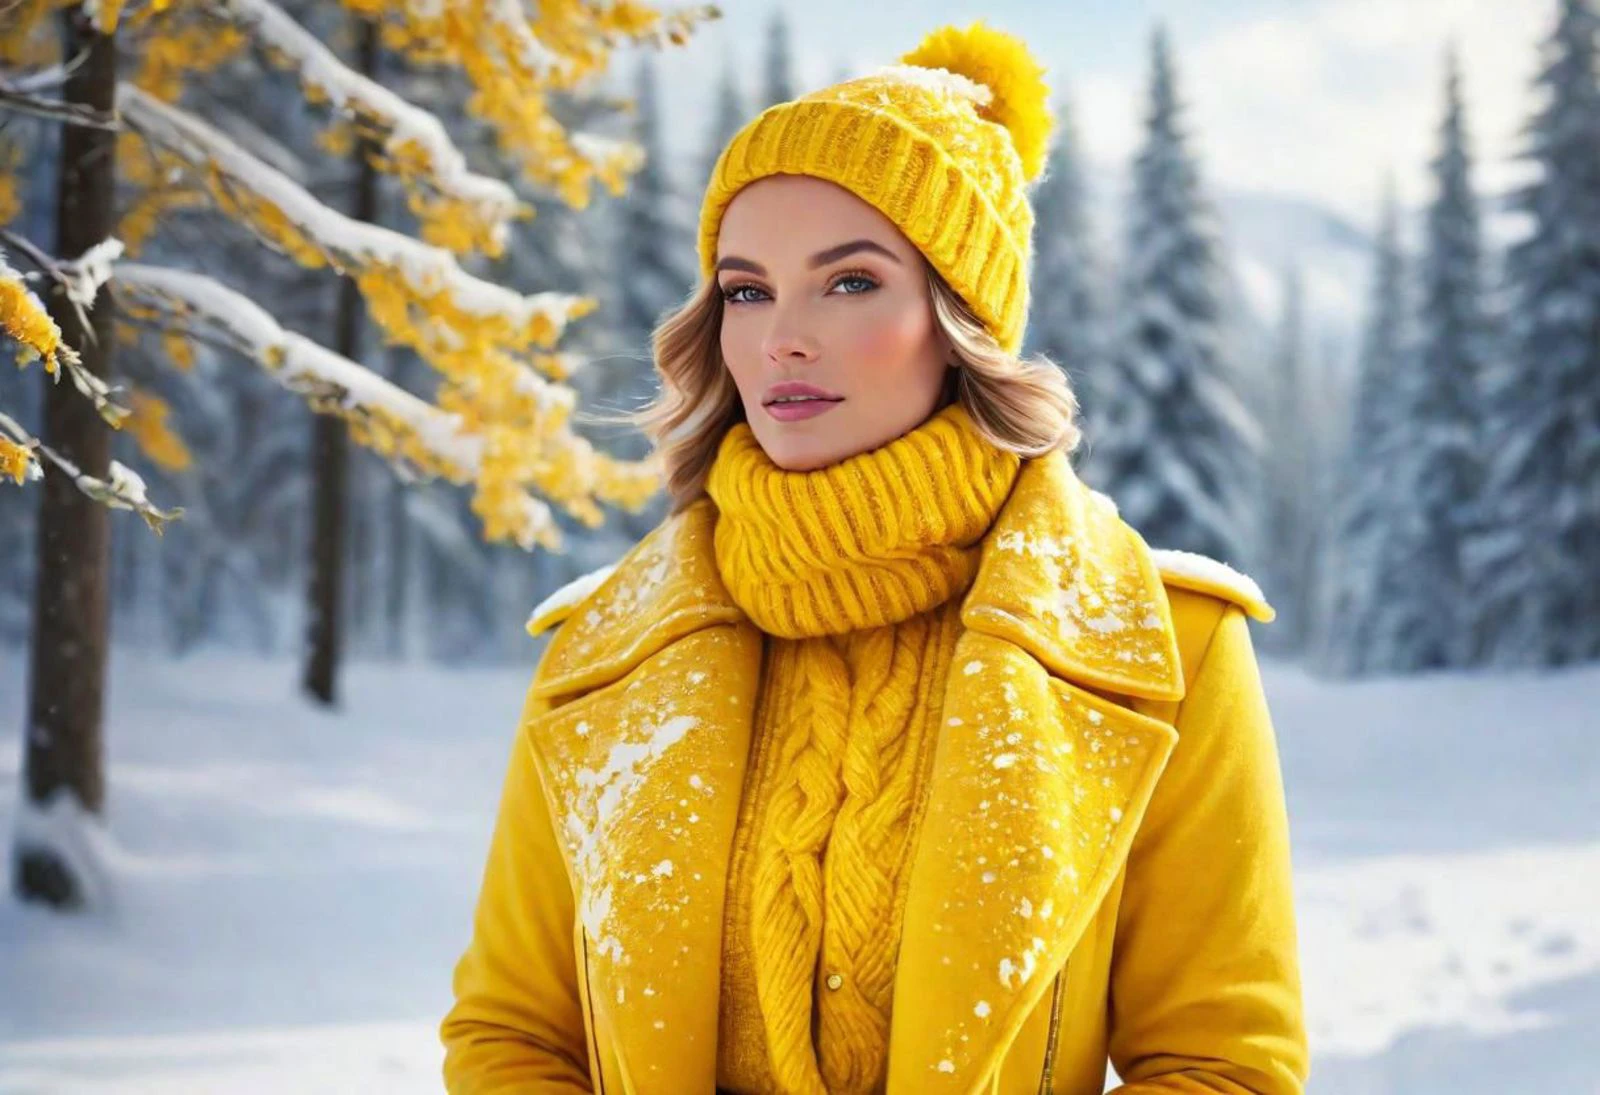 "Gestalten Sie ein Bild mit einer atemberaubenden Frau in leuchtendem Gelb, verkörpert die Essenz des Winters für das Yellow Team. Stellen Sie sich eine Szene vor, in der sie elegant in Winterkleidung gekleidet ist, umgeben von verschneiten Landschaften und eisigen Akzenten. Bringen Sie die Schönheit der Jahreszeit zum Ausdruck und präsentieren Sie den lebendigen Geist des Yellow Teams vor der winterlichen Kulisse."